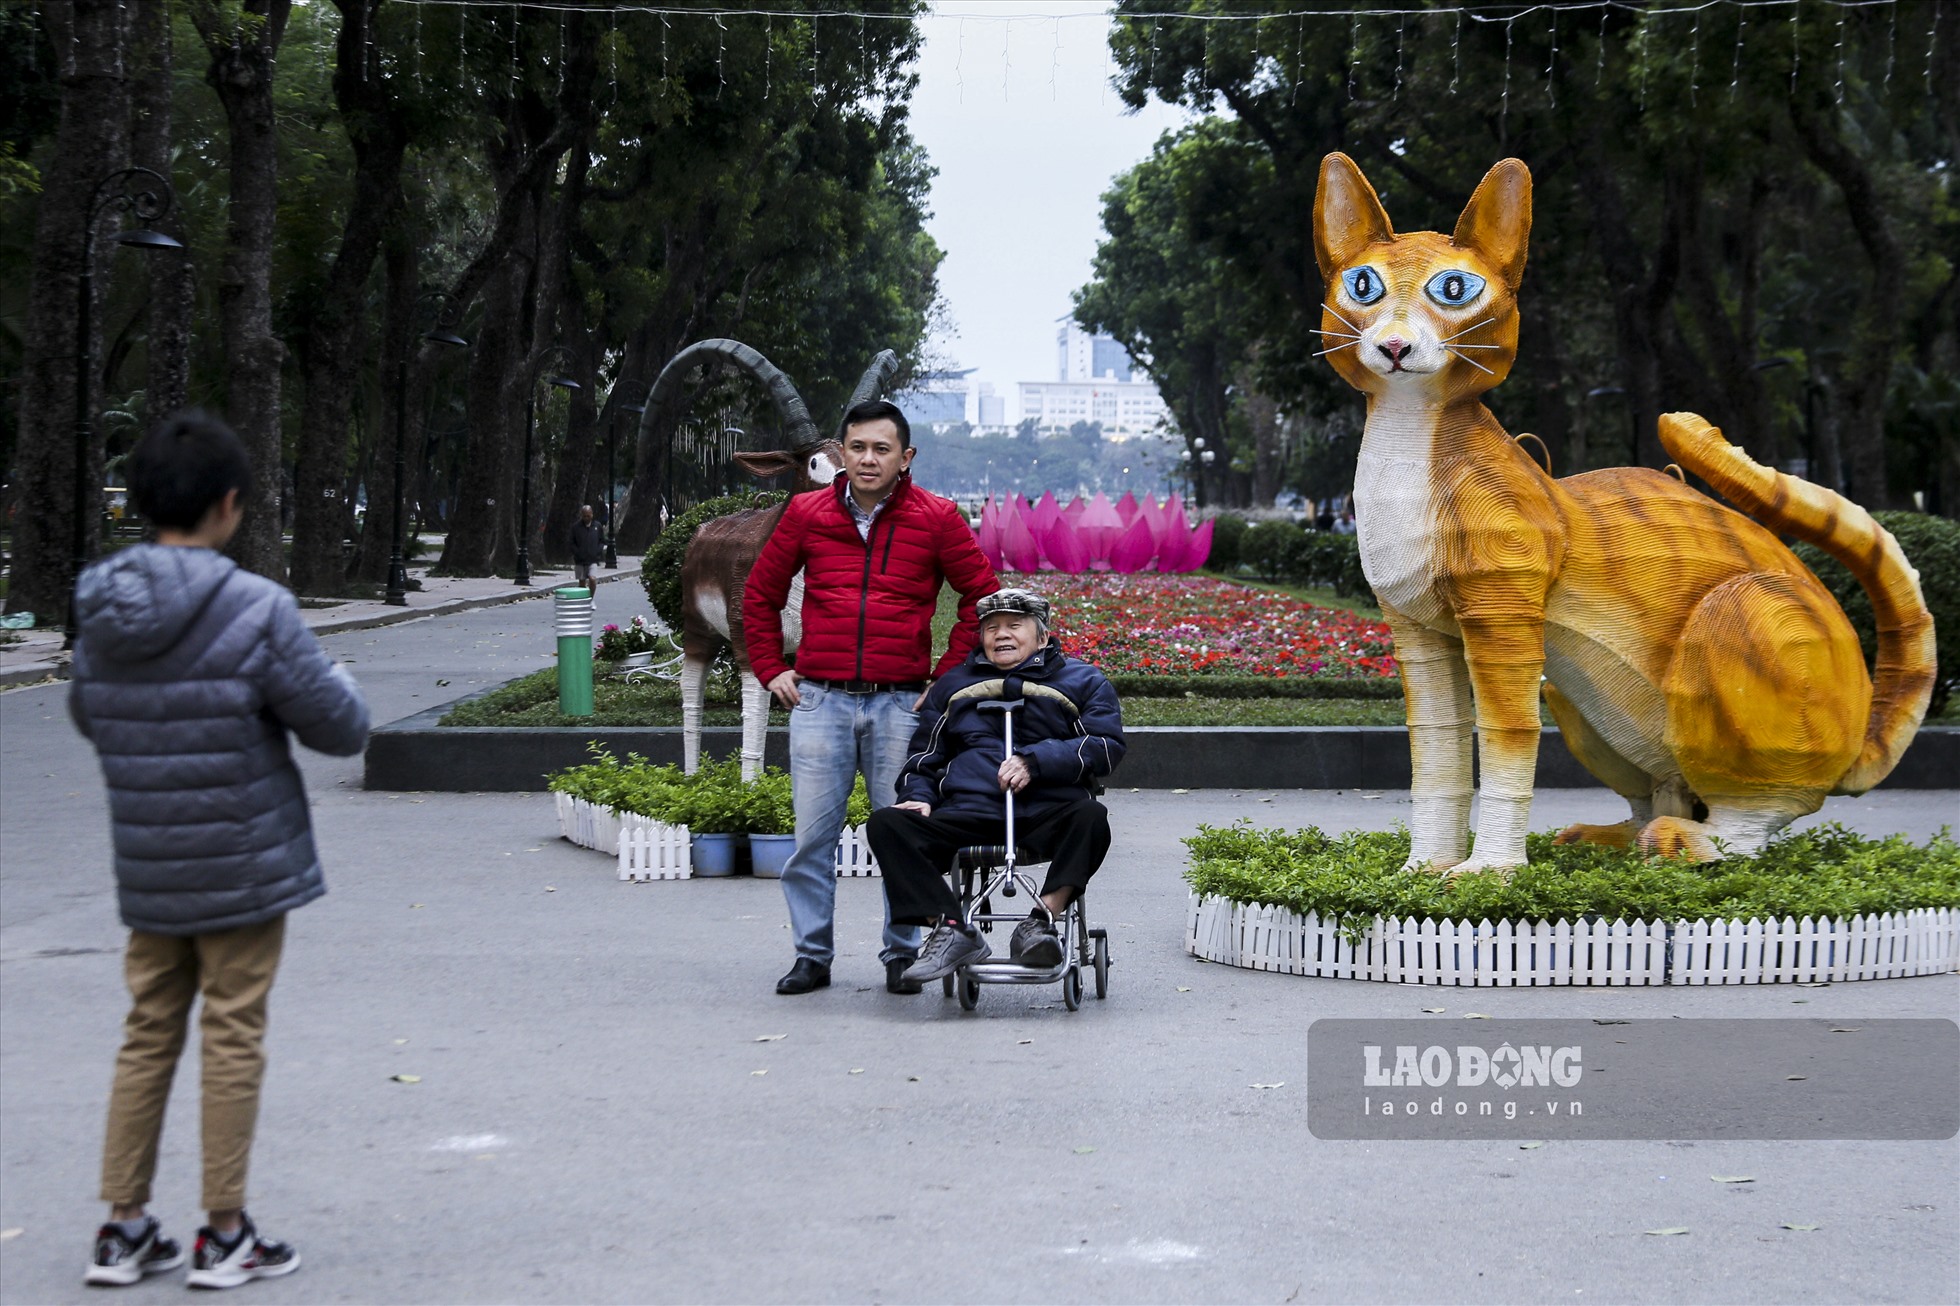 Tại Công viên Thống Nhất - Hà Nội, xuất hiện linh vật hình con mèo được quấn ngoài bằng dây nilon để tạo hình, có kết hợp đèn chiếu sáng hướng ra phía đường Trần Nhân Tông đã gây được sự chú ý của người dân.